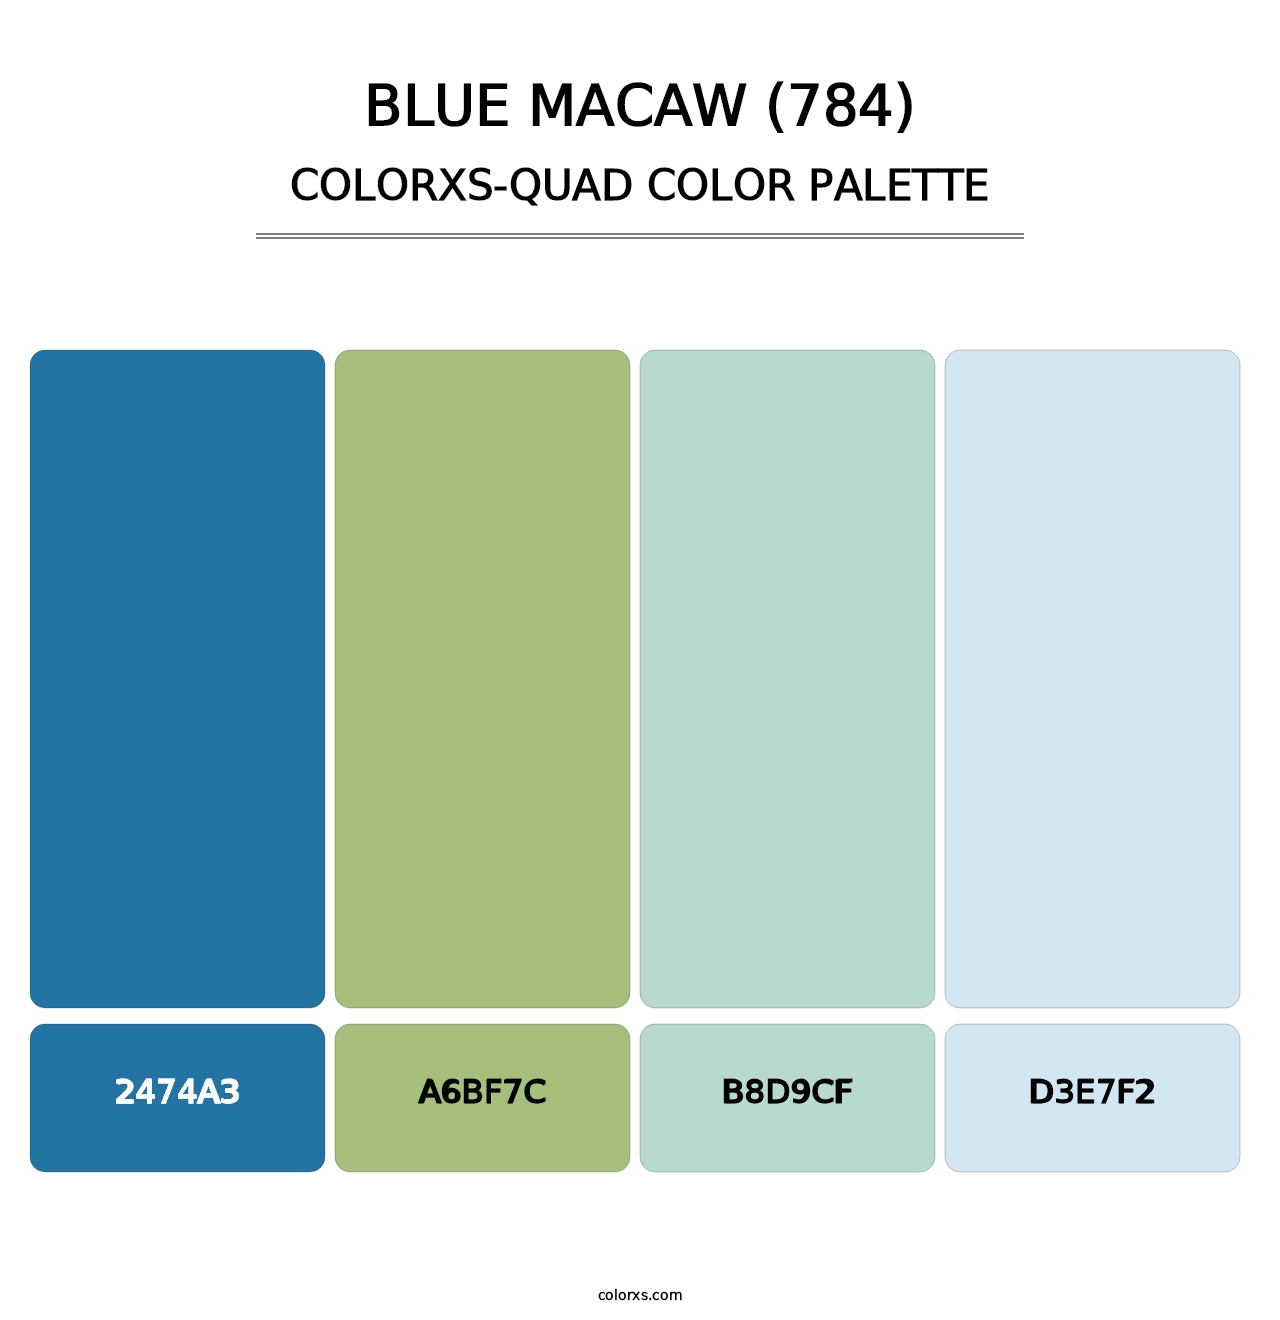 Blue Macaw (784) - Colorxs Quad Palette